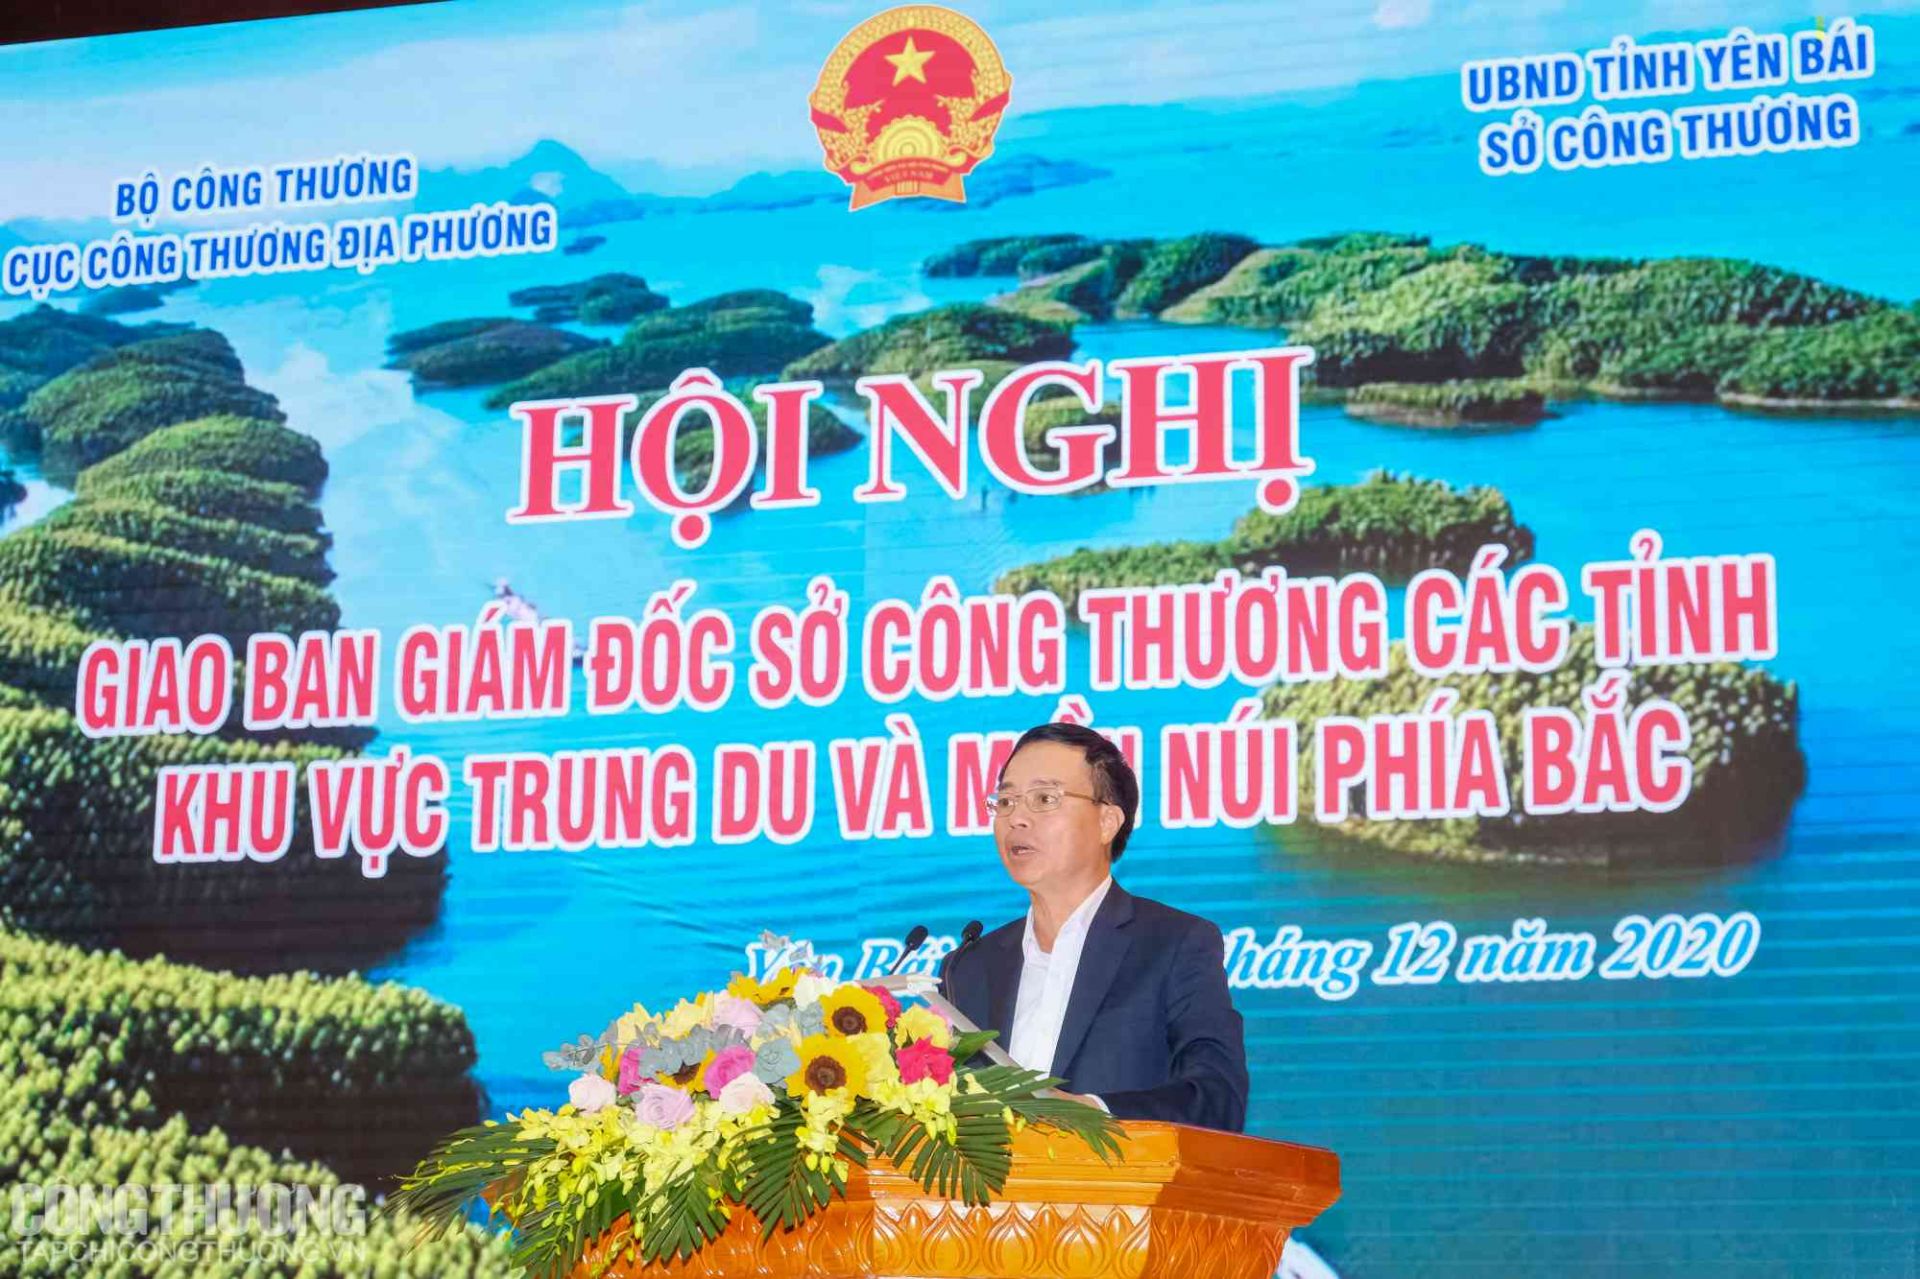 Ông Ngô Quang Trung - Cục trưởng Cục Công Thương địa phương báo cáo tại Hội nghị